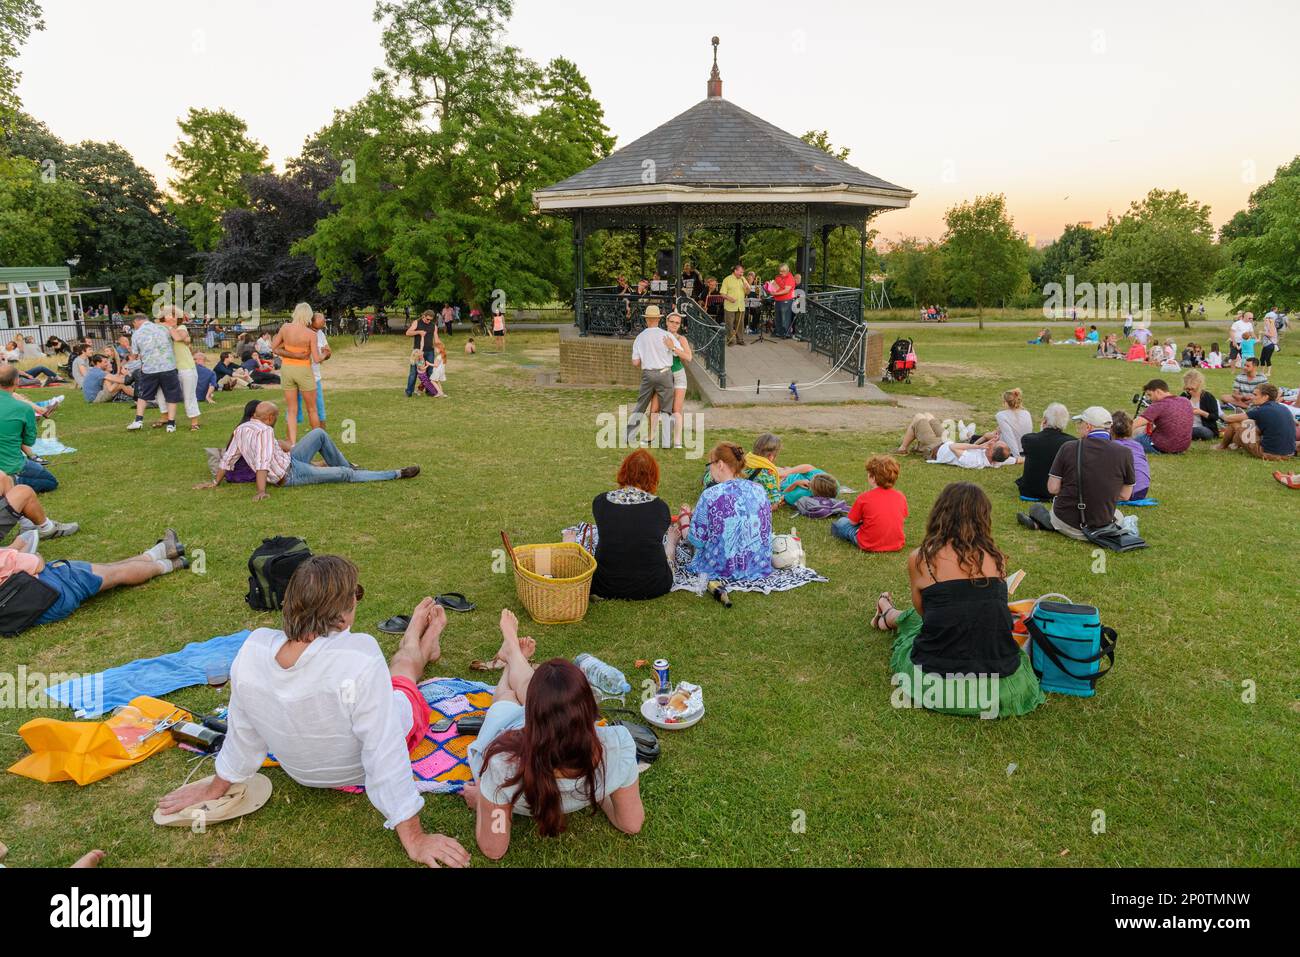 Les gens à l'écoute de la musique live au kiosque de la colline du Parlement à Hampstead Heath un soir d'été, Londres, Angleterre, Royaume-Uni Banque D'Images